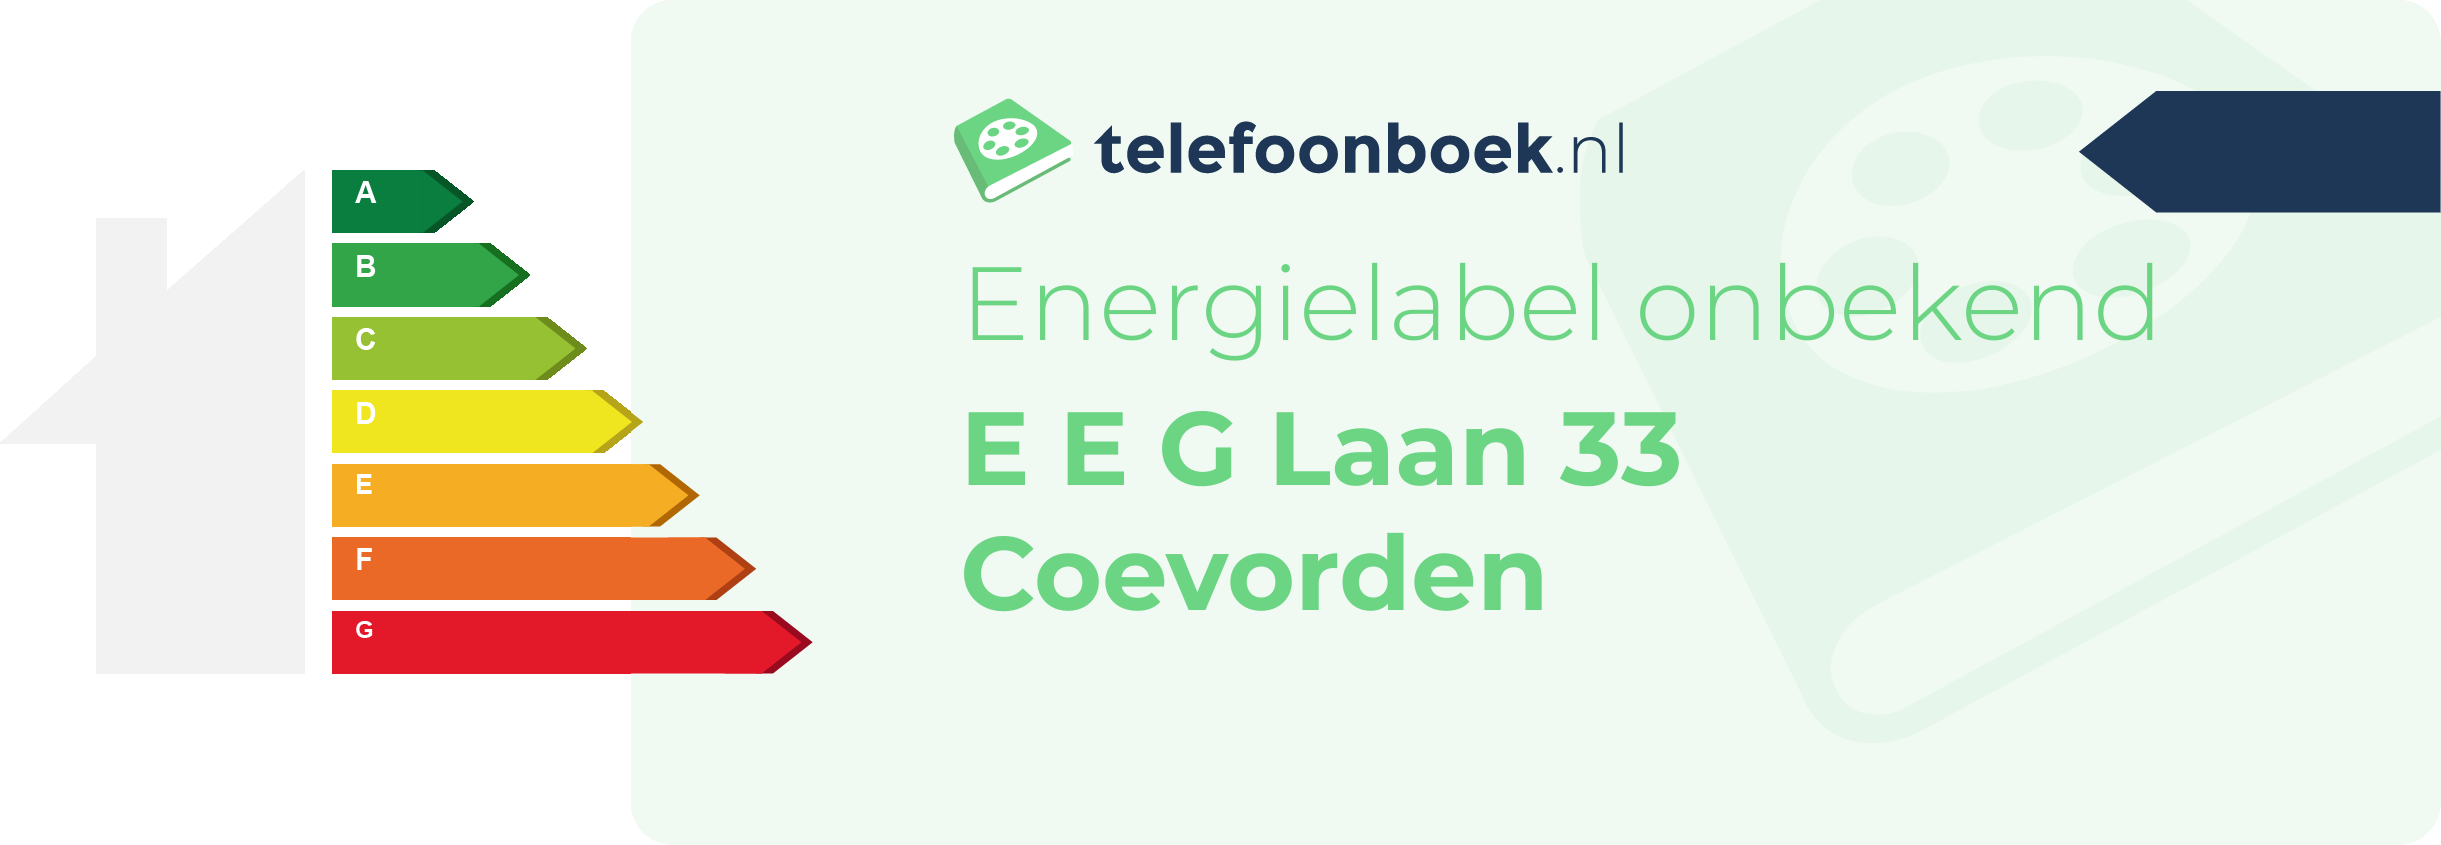 Energielabel E E G Laan 33 Coevorden